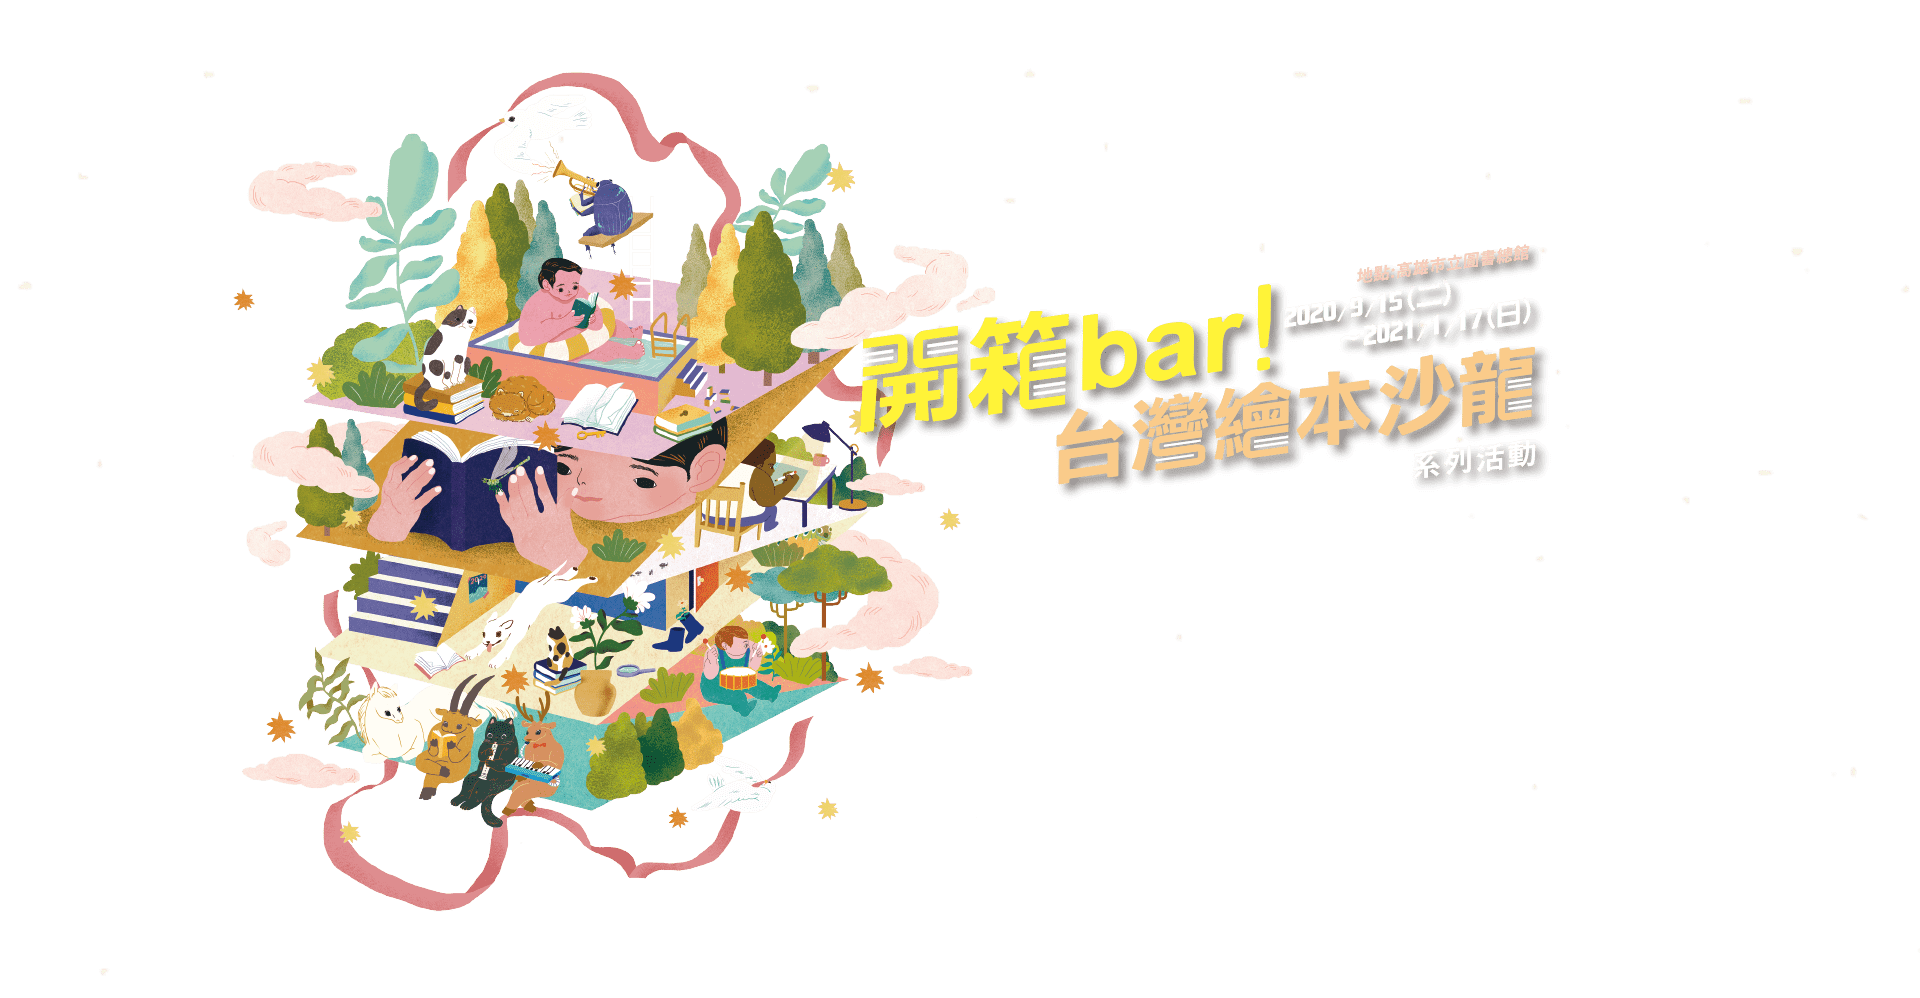 《開箱bar!》台灣繪本沙龍系列活動，2020/9/15~2021/1/17，地點：高雄市立圖書館